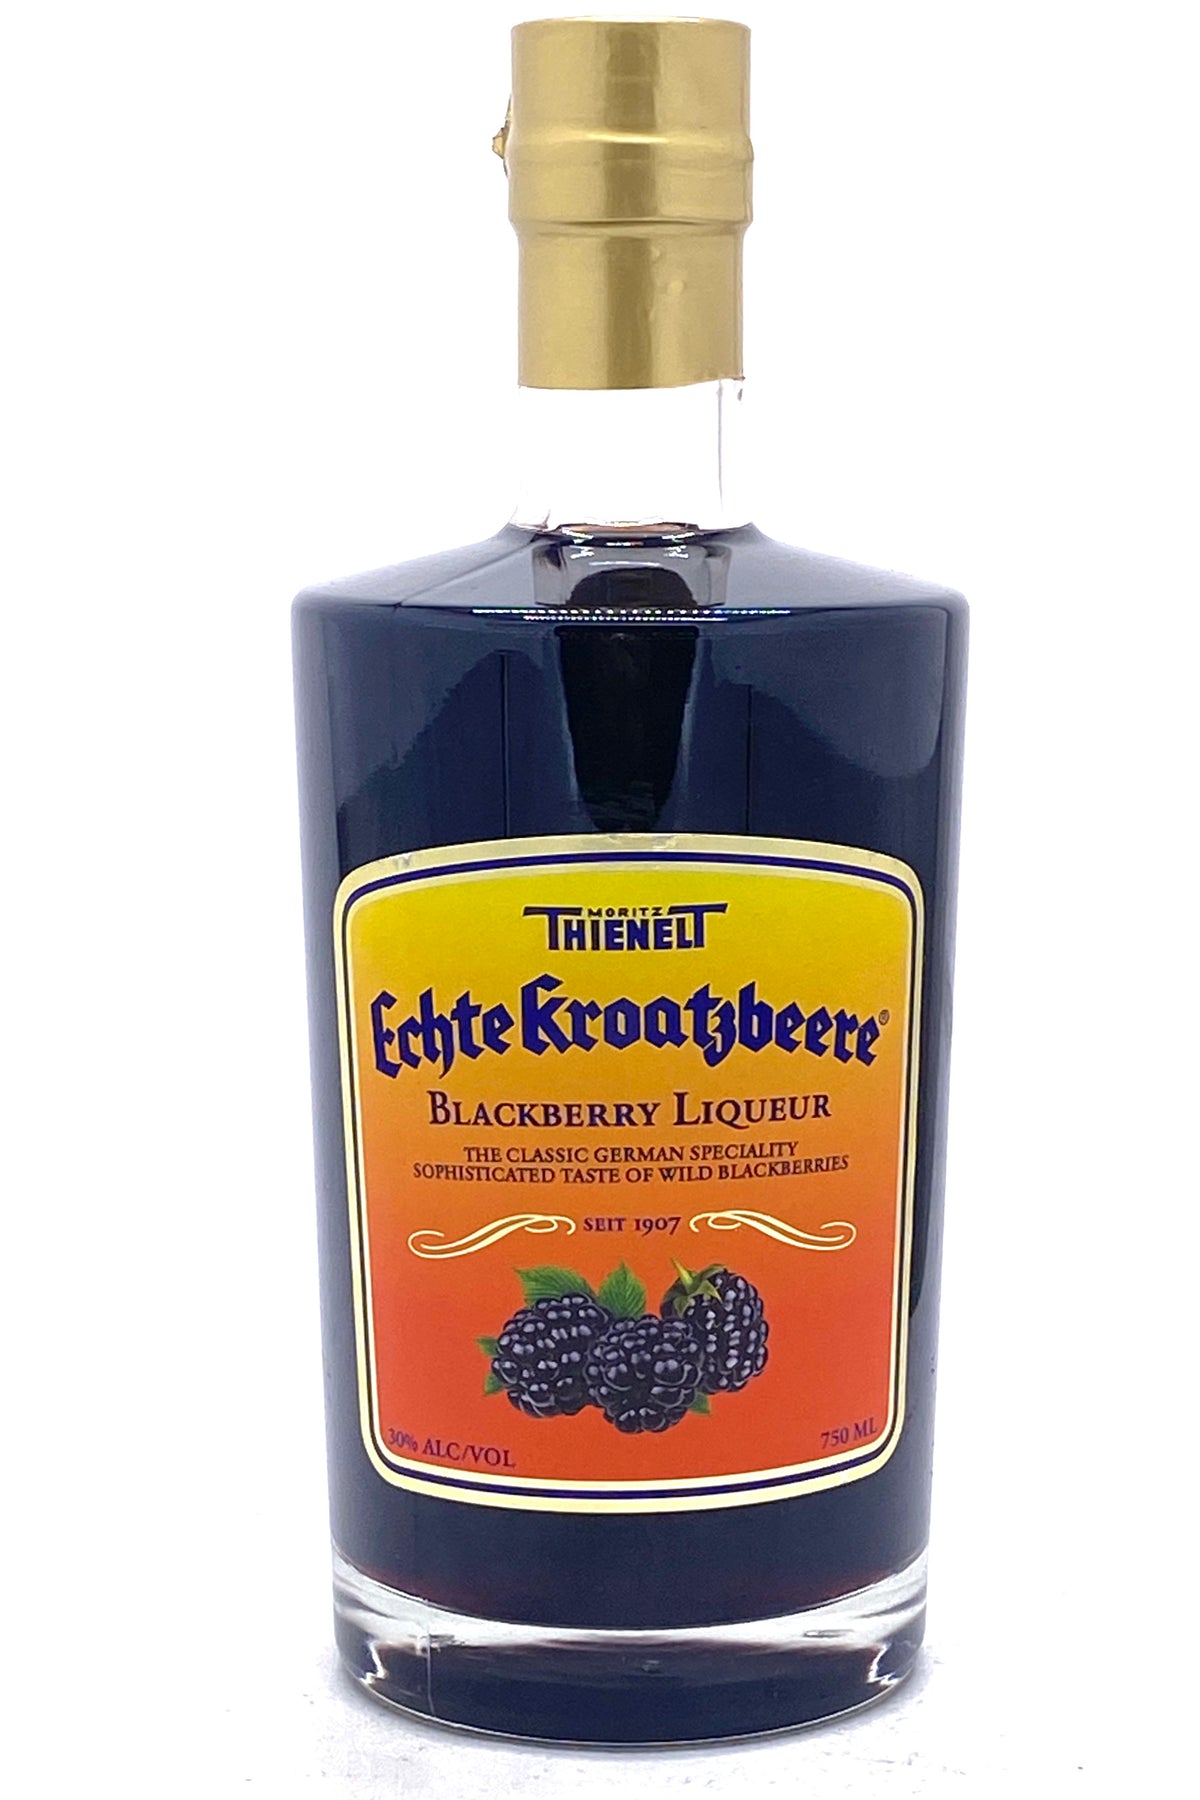 Thiennelt Echte Kroatzbeere Blackberry Liqueur 750 ml